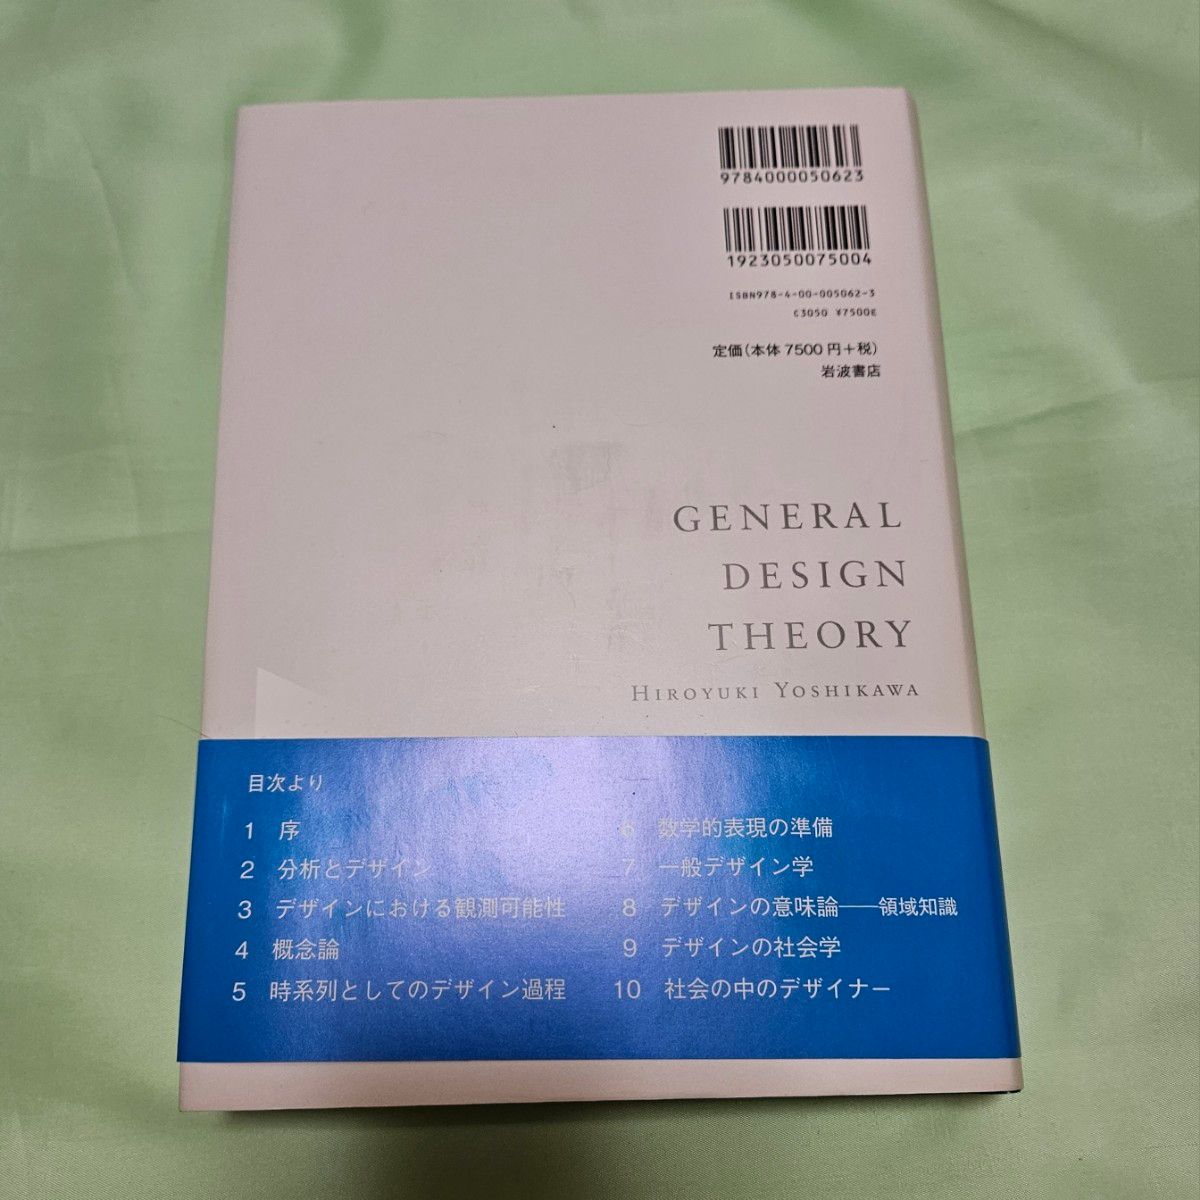 一般デザイン学 吉川弘之 参考書 デザイナー アート 芸術 数学的概念